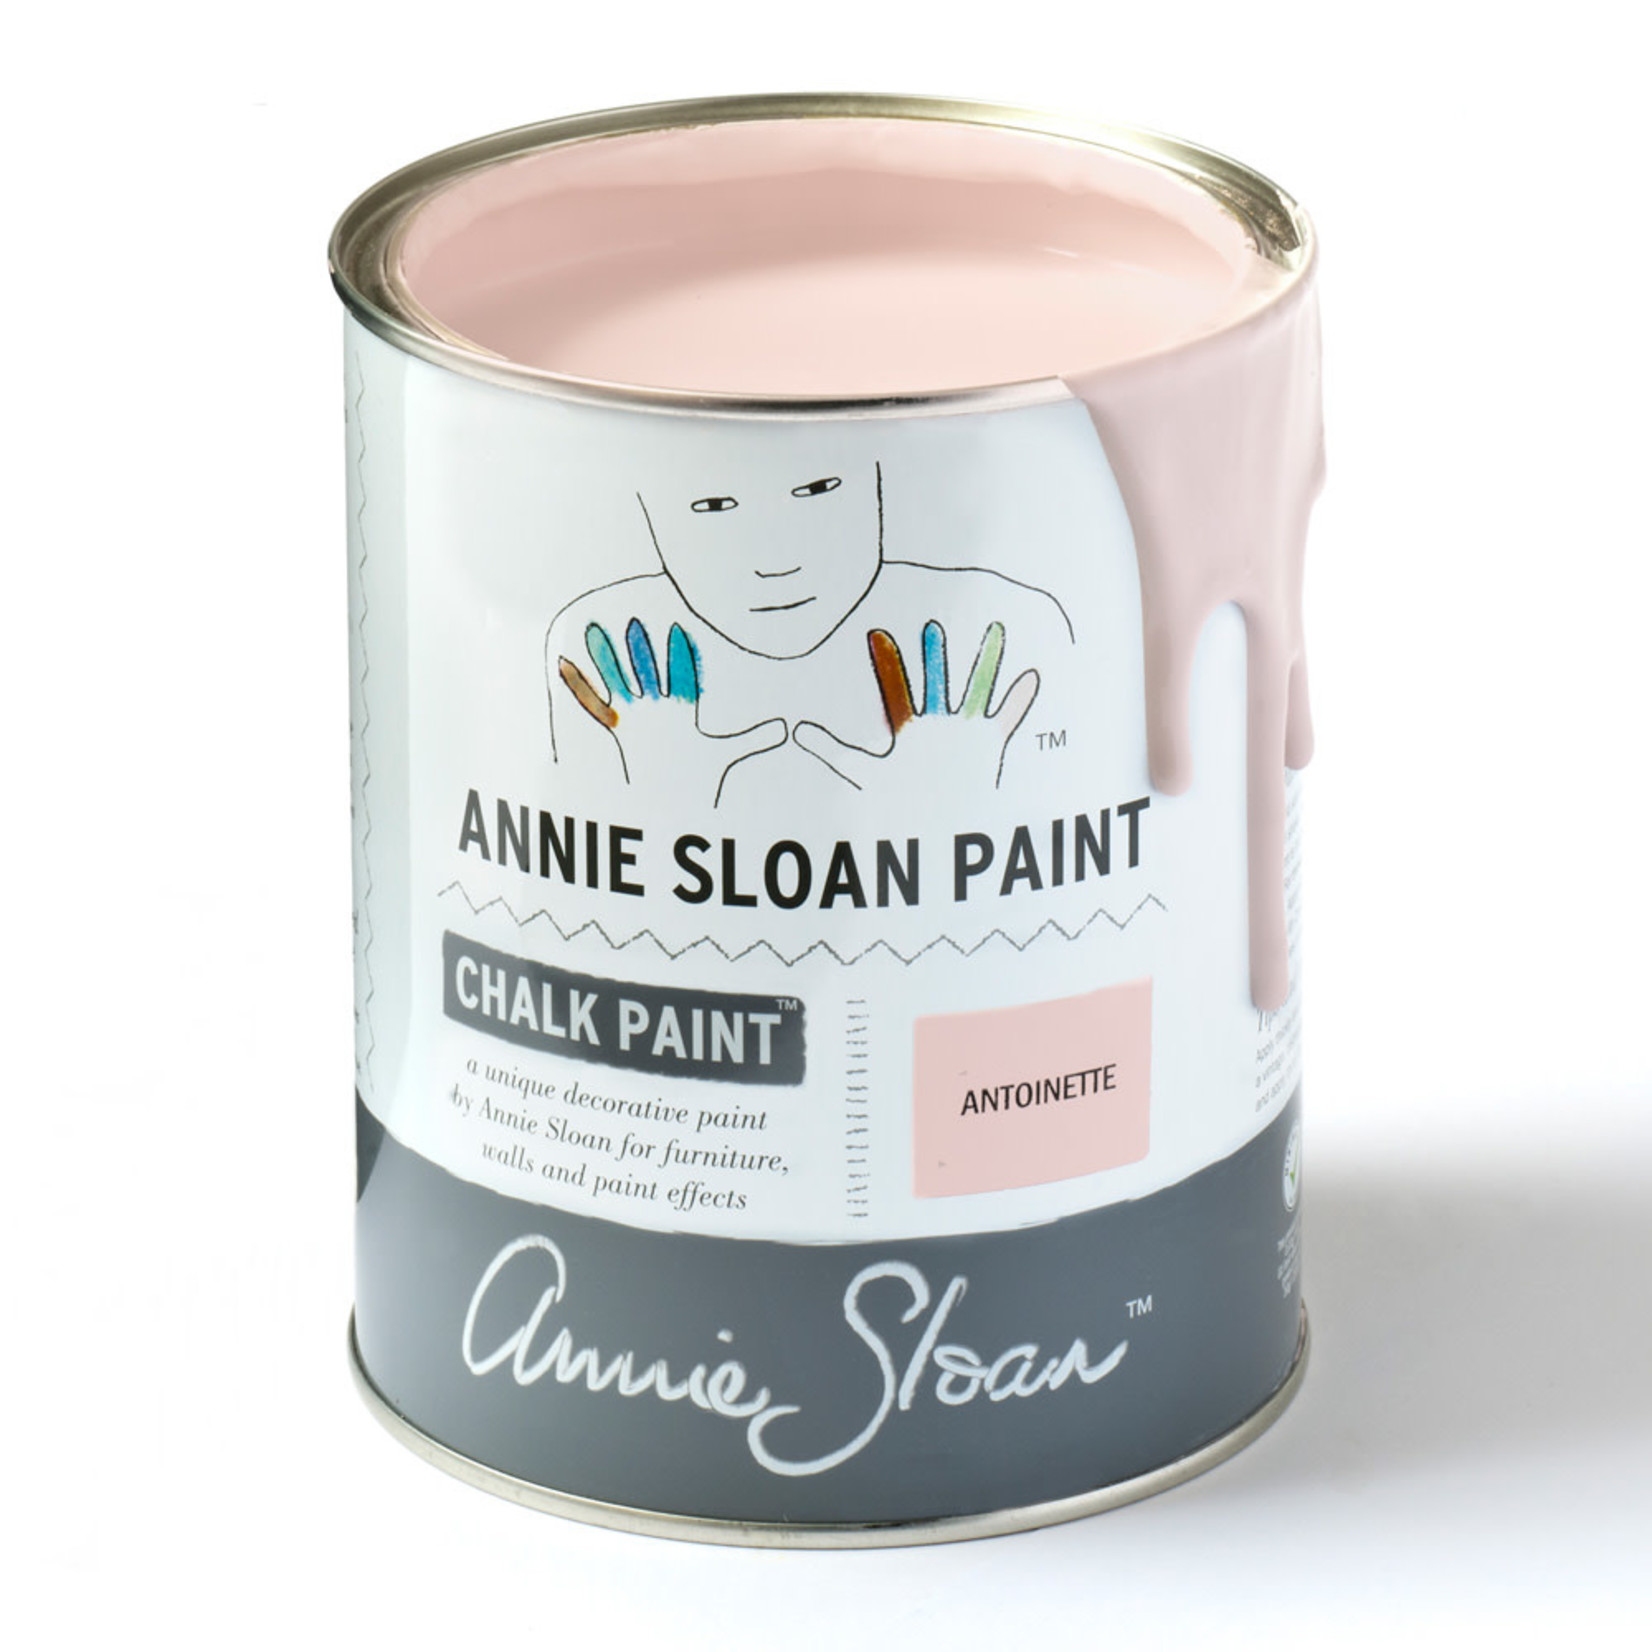 Annie Sloan Chalk Paint 1 Litre Antoinette